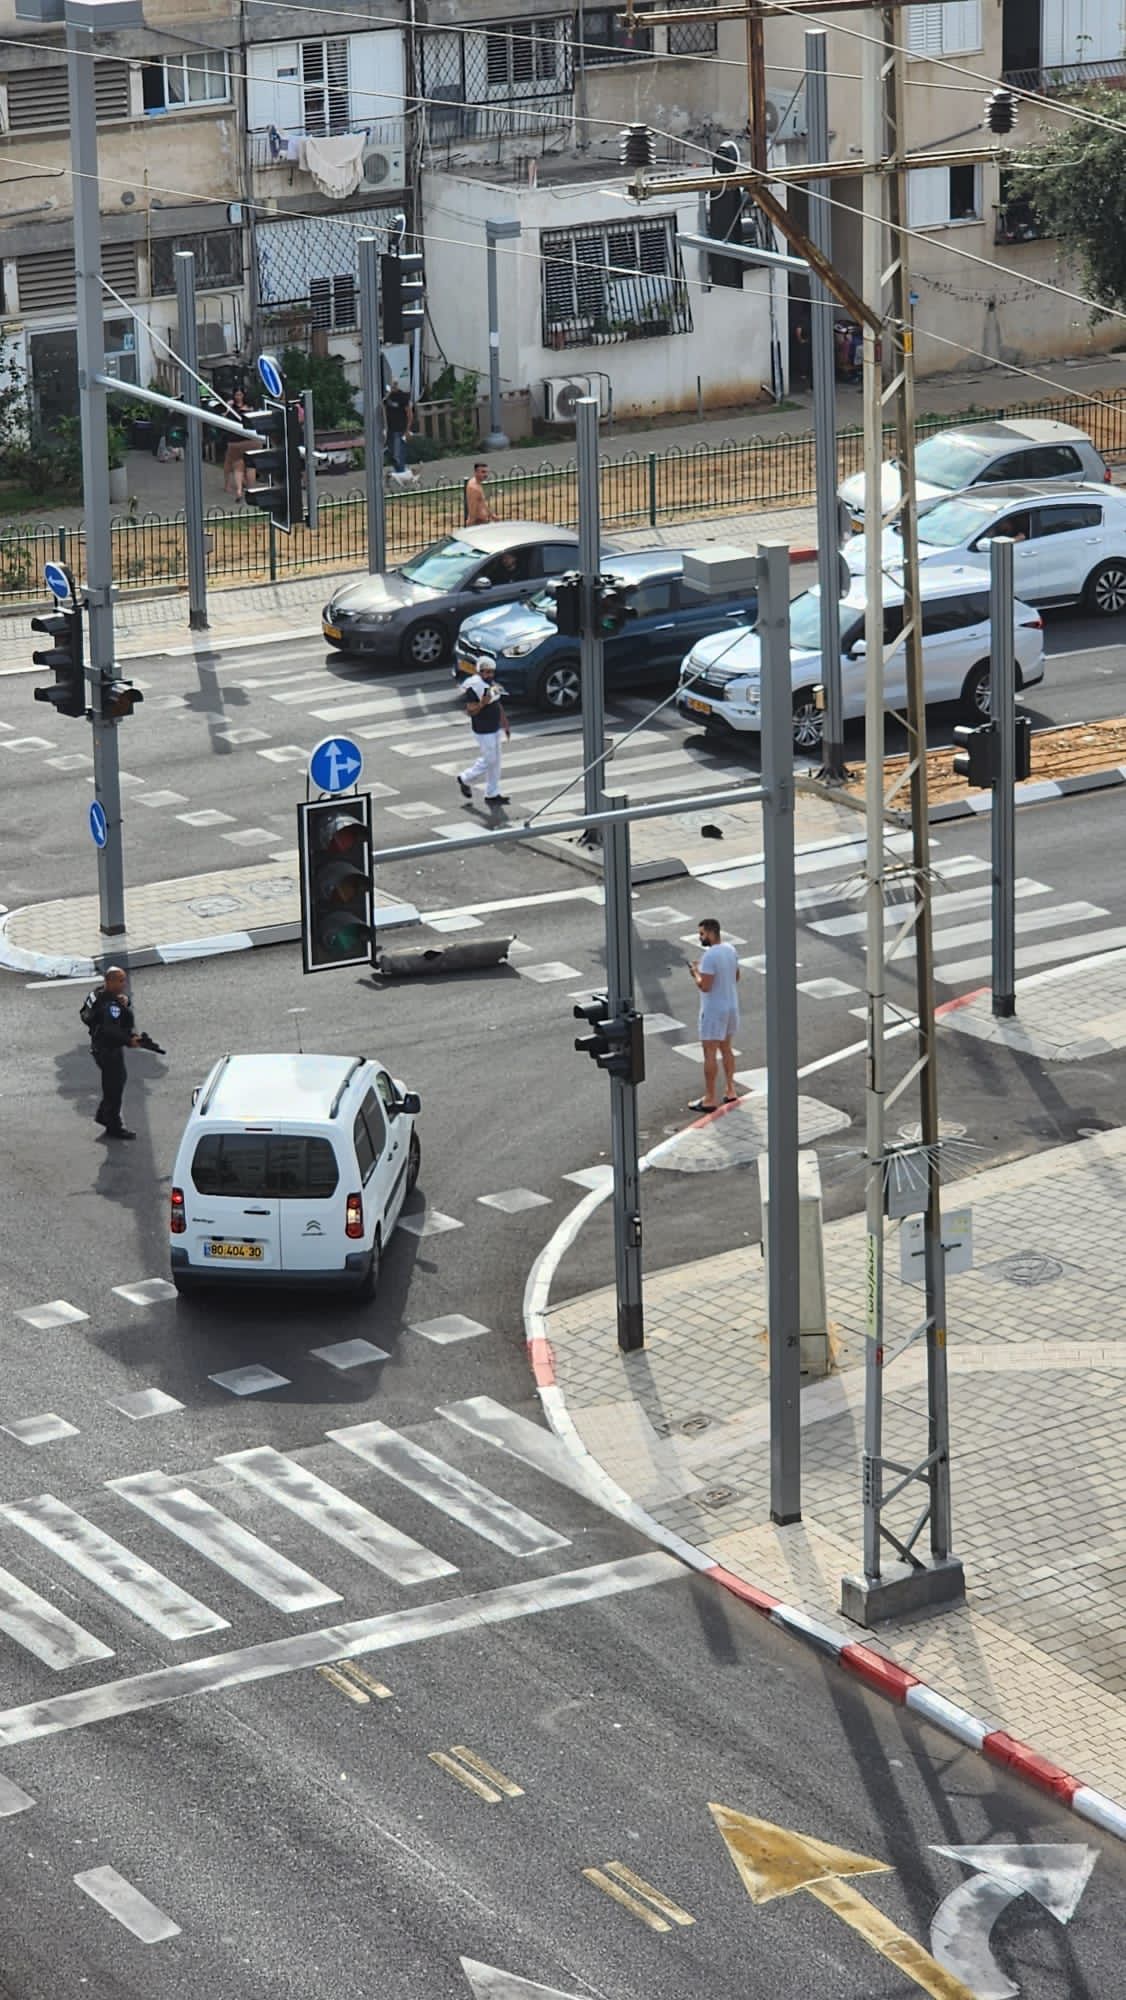 שלד רקטה שנורתה לתל אביב על כביש (צילום: רשתות חברתיות, סעיף 27א' לחוק זכויות יוצרים)